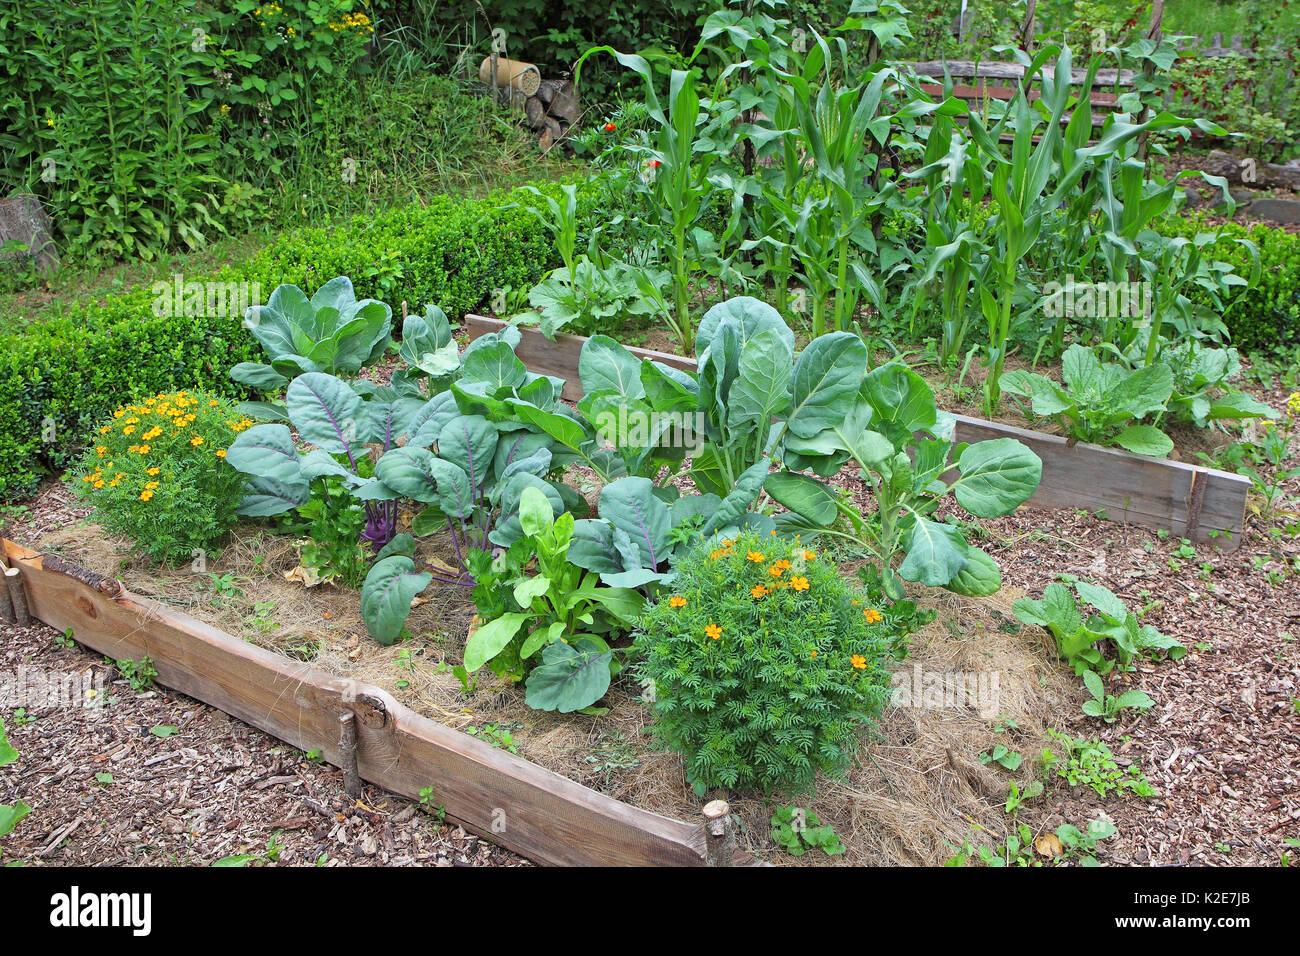 Granja jardín con diversas plantas típicas tales como el repollo, nabo, Alemán estragón mexicano, el maíz y fríjol, Alemania Foto de stock